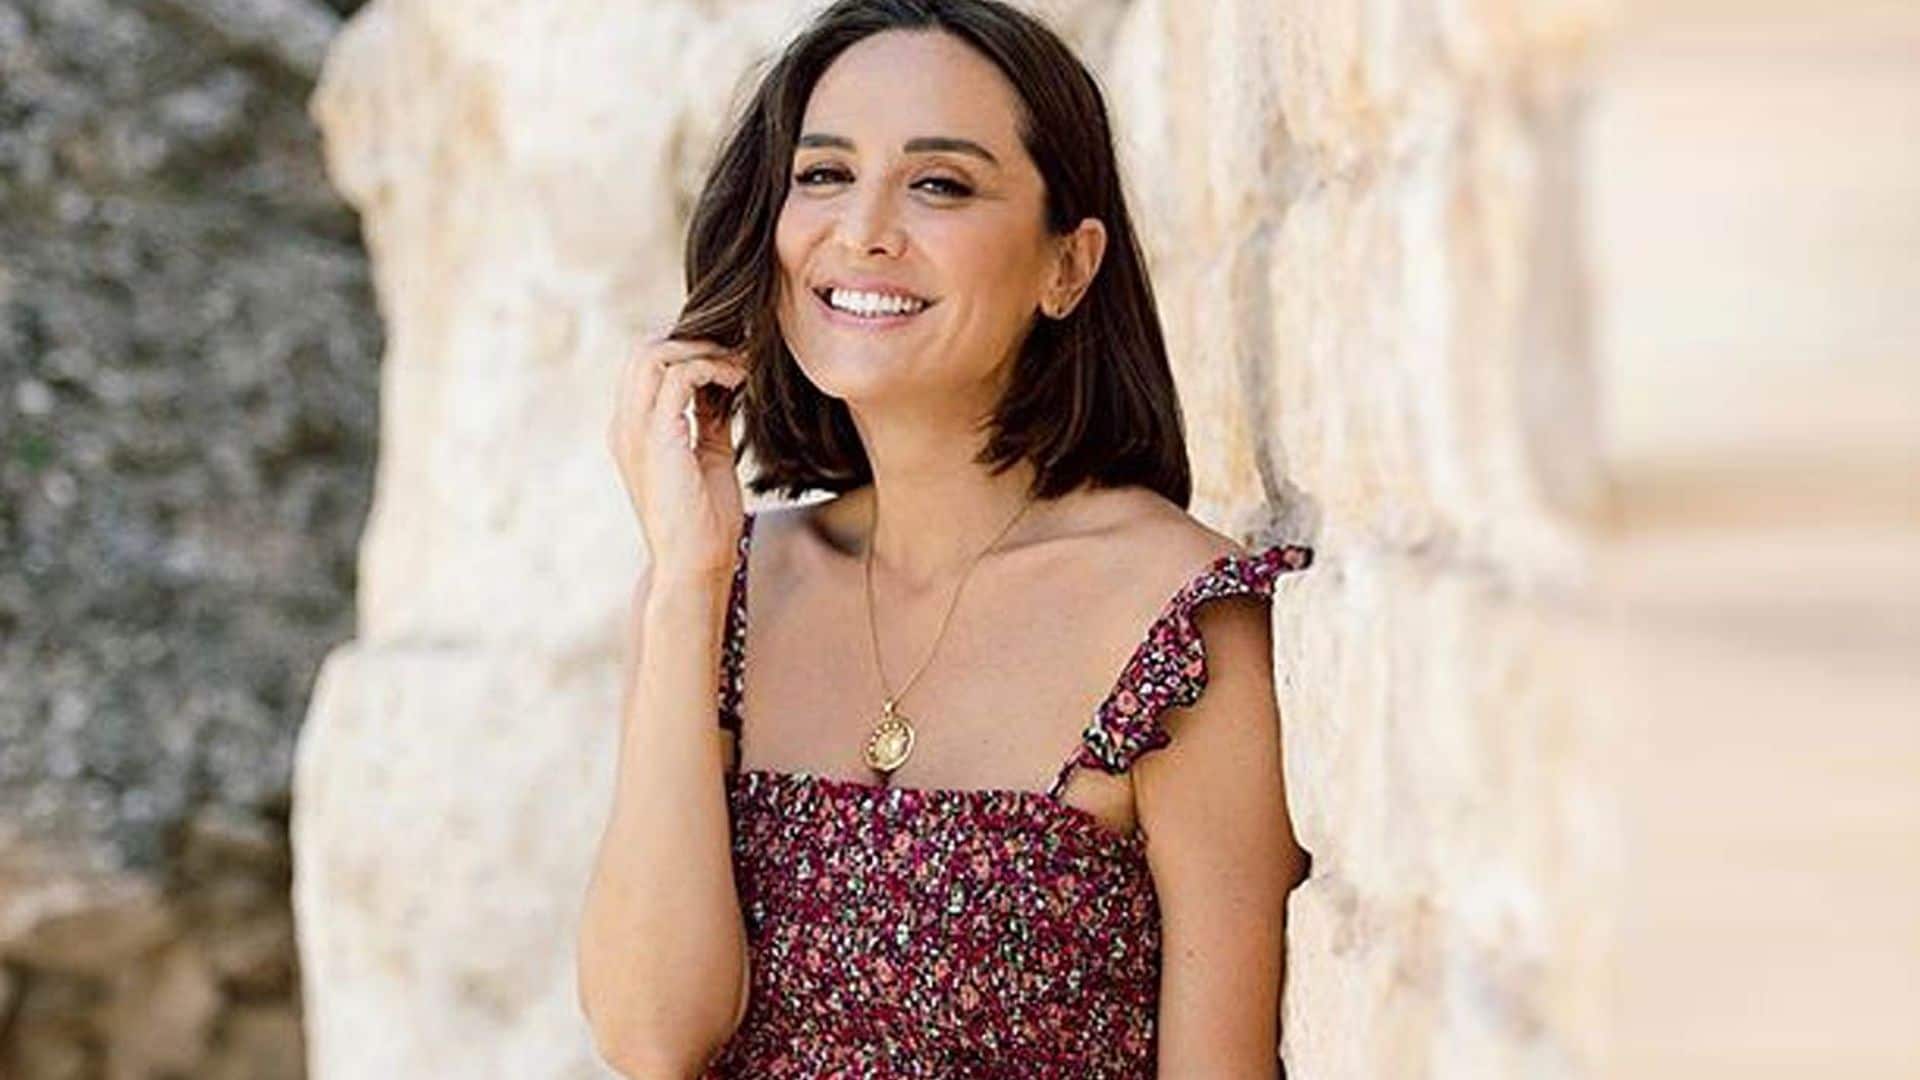 Zara renueva por 20 euros el vestido viral de lunares que enamoró a Tamara Falcó